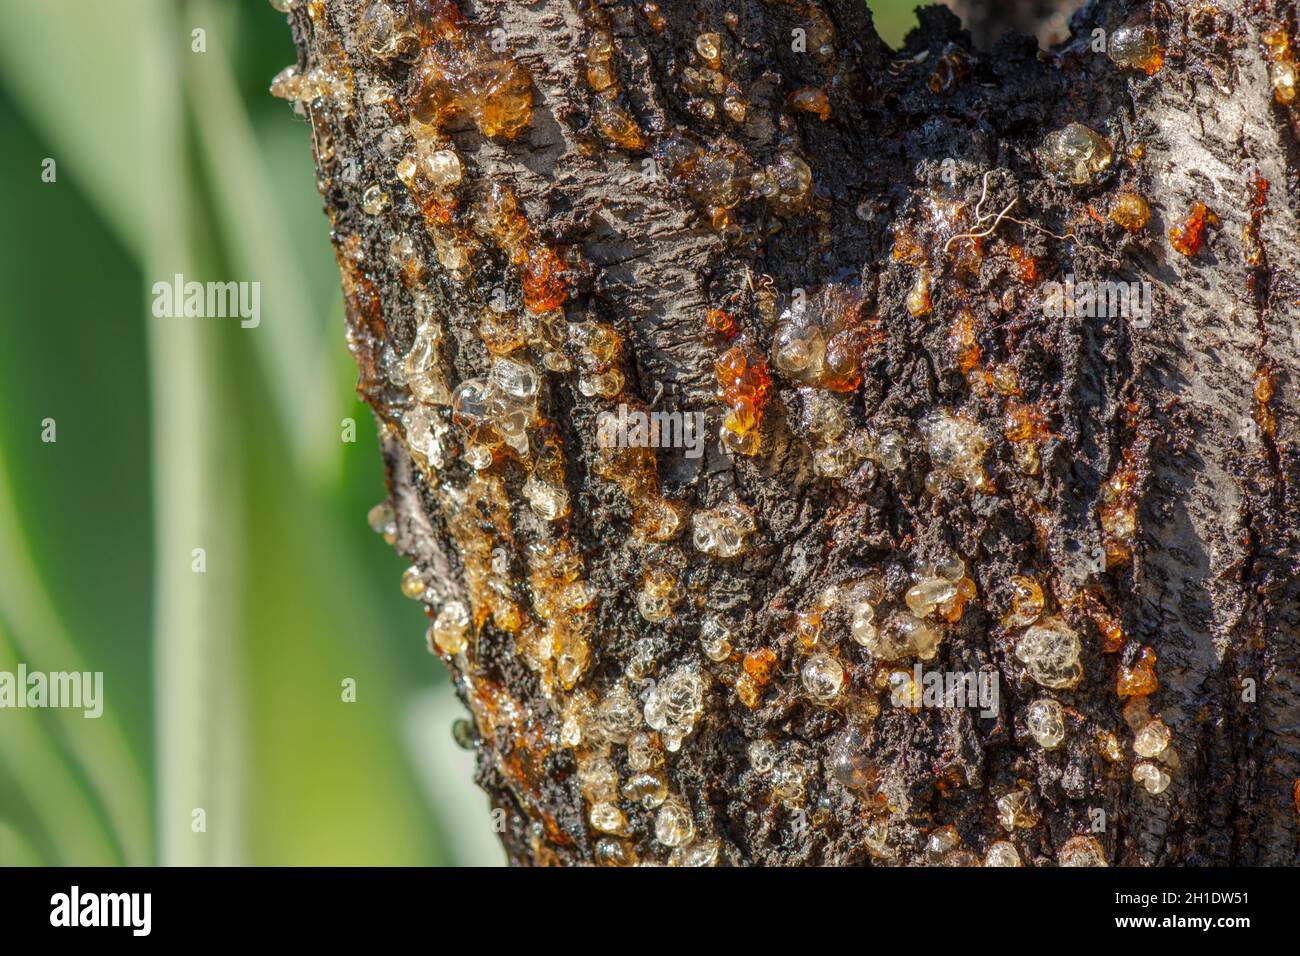 Amande arbre suintant la sève de l'écorce due à la maladie fongique, affaiblie par des conditions chaudes, sèches, Espagne. Banque D'Images